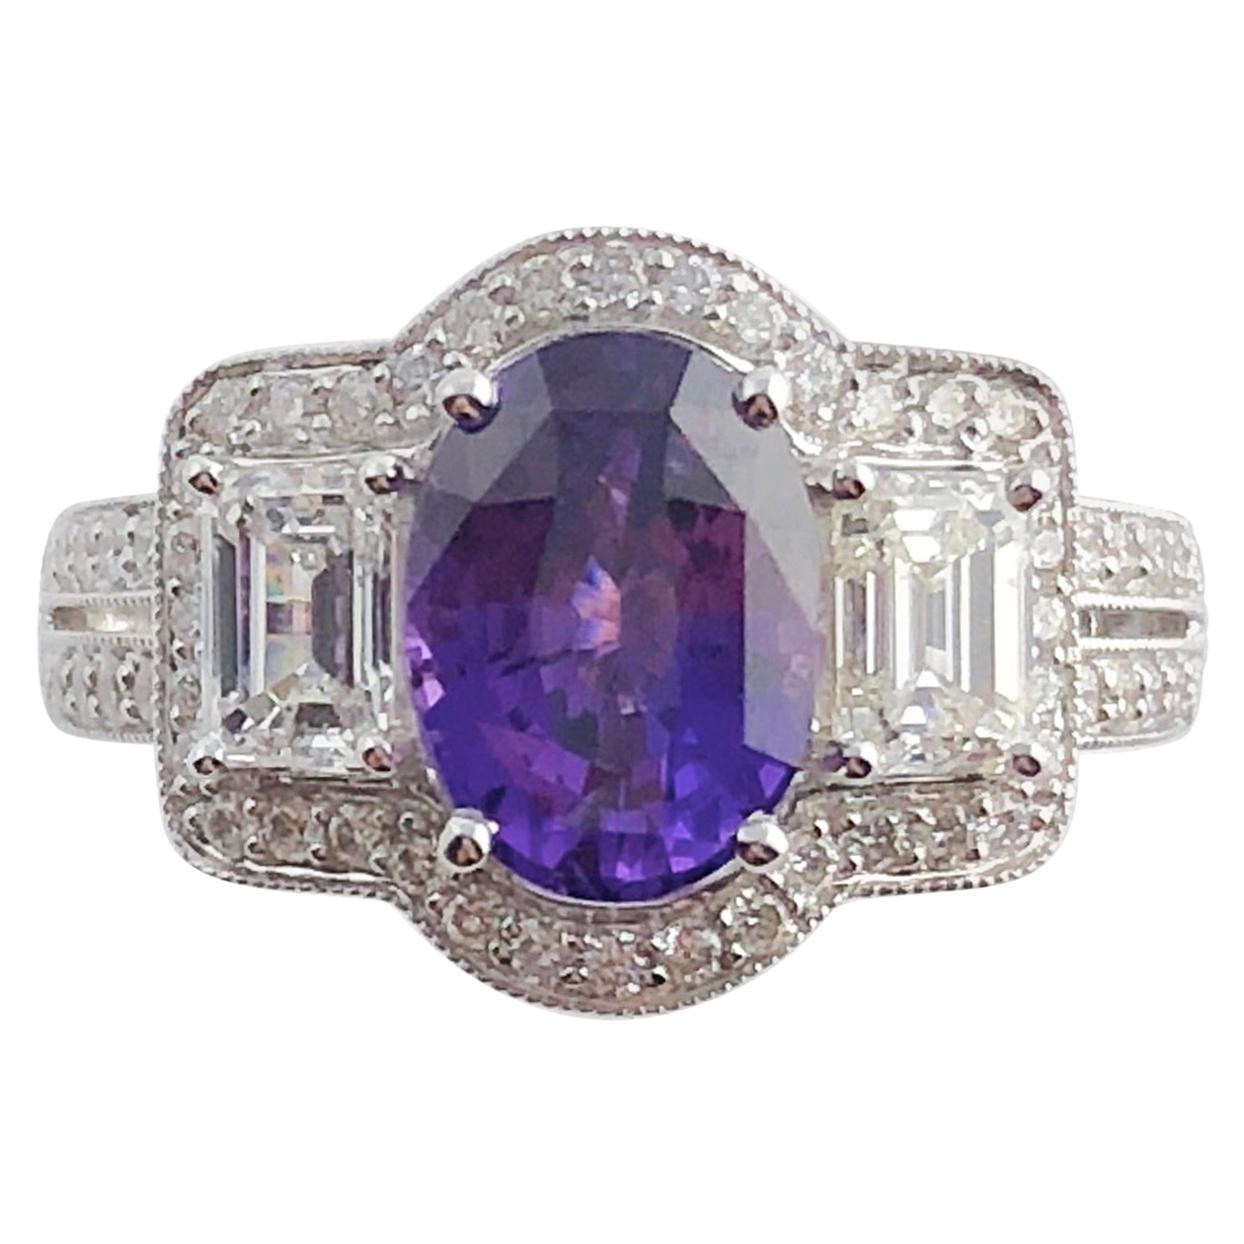 Wir präsentieren einen exquisiten Ring mit einem GIA-zertifizierten 2,55 Karat Bicolor-Saphir im Ovalschliff als fesselndes Herzstück. Dieser einzigartige Saphir zeigt einen faszinierenden Farbwechsel, der unter verschiedenen Lichtverhältnissen von